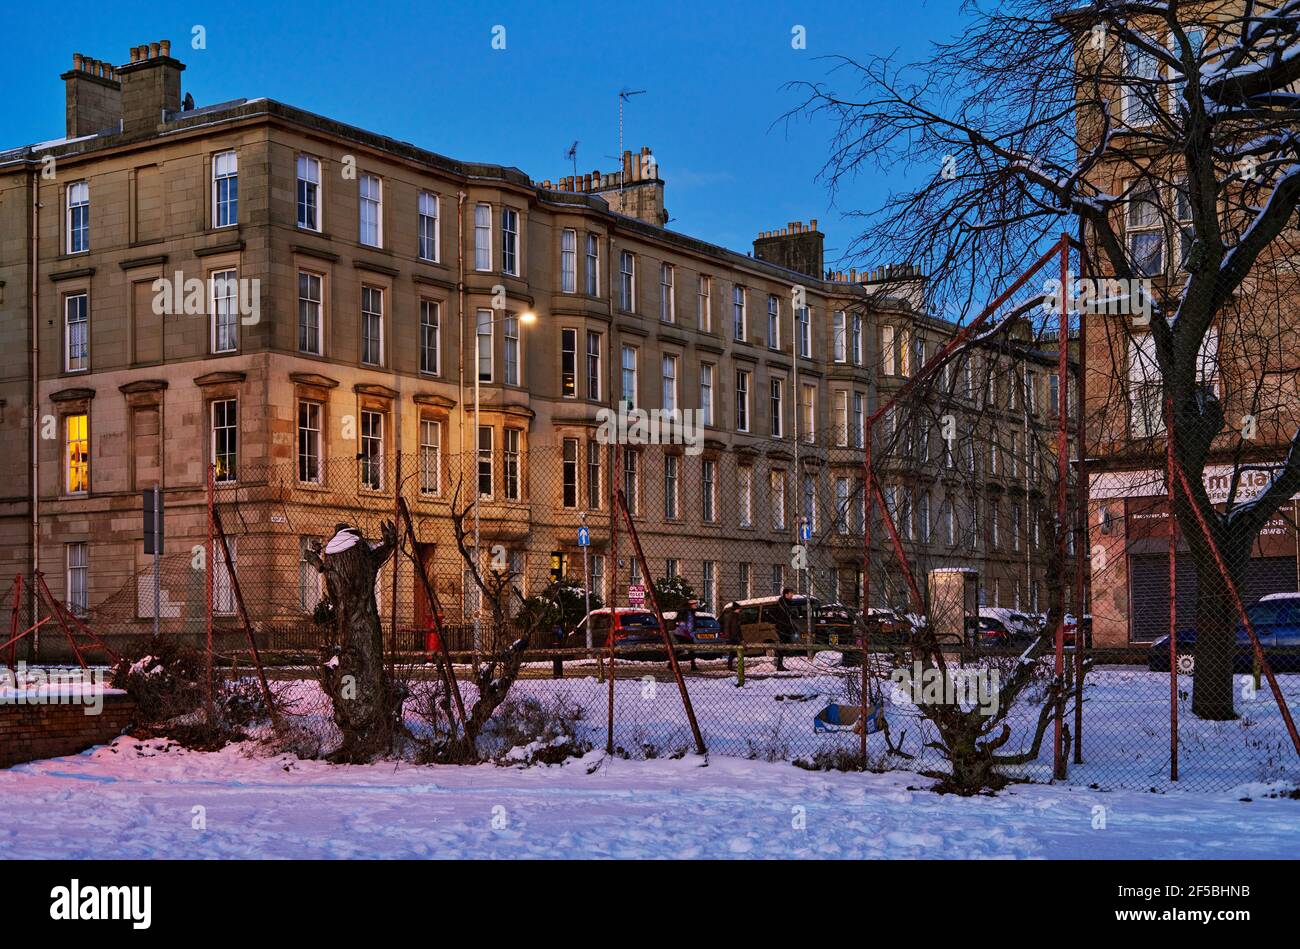 Glasgow se pone al atardecer con nieve de invierno. Foto de stock